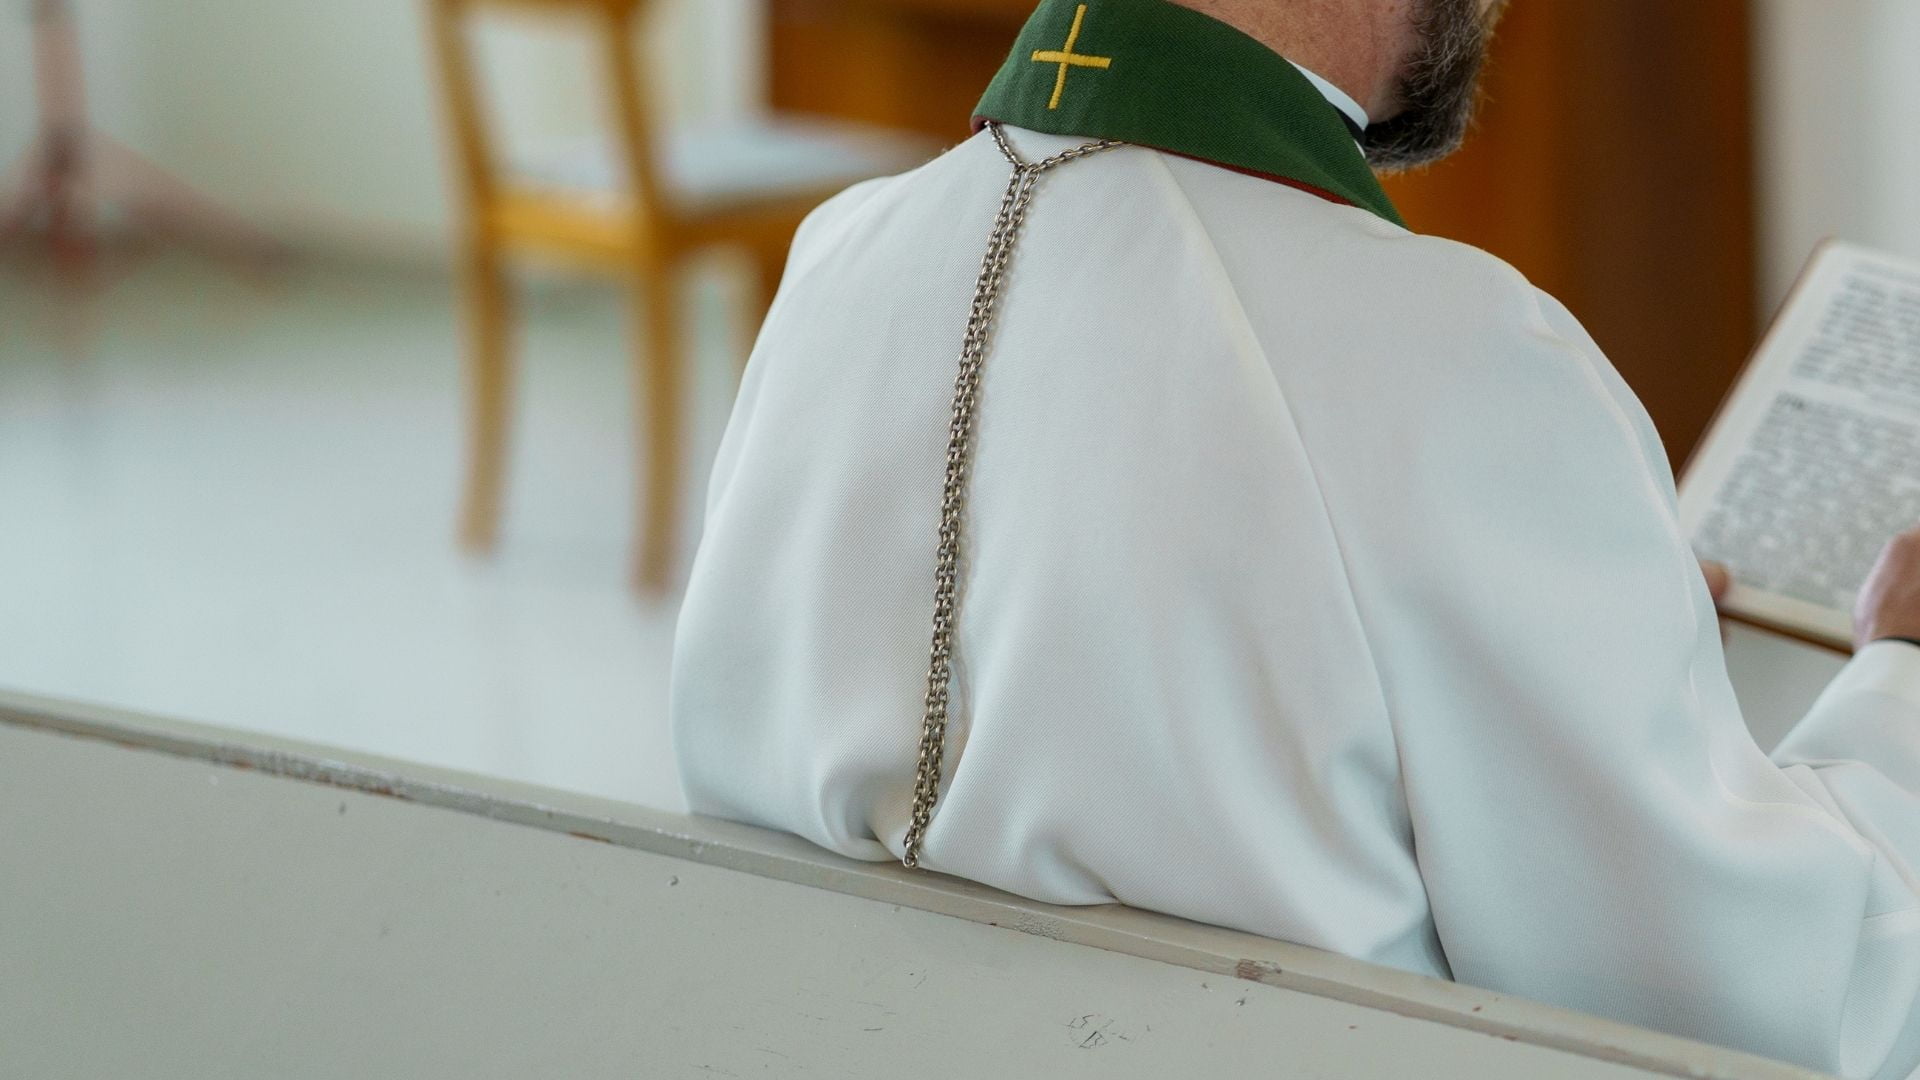 Sacerdote condenado | Iglesia católica pederastia